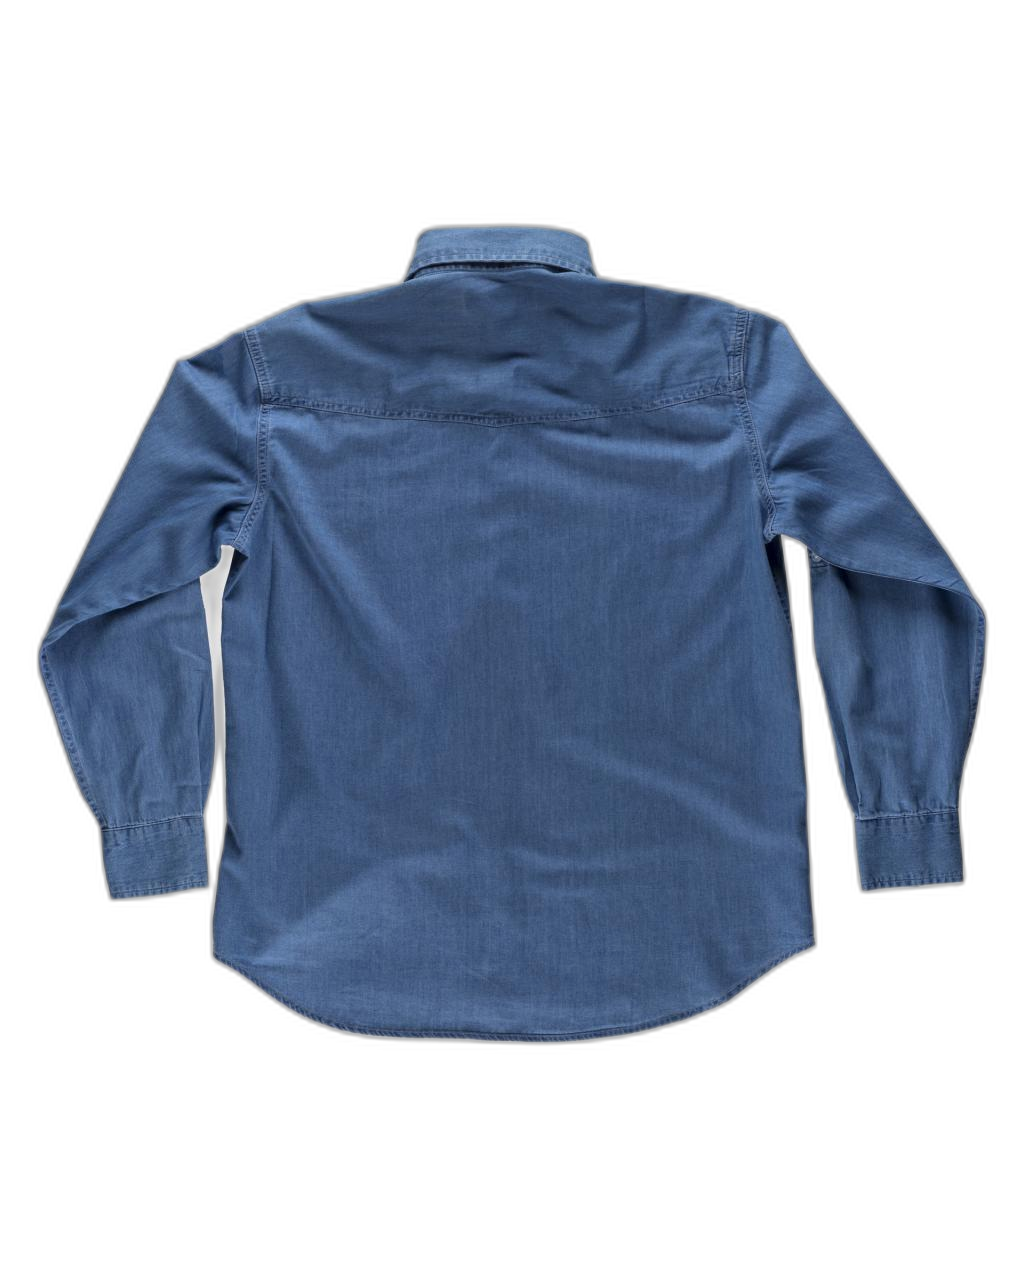 Camisa vaquera manga larga con bolsillos en pecho y canesú en espalda WORKTEAM B8700